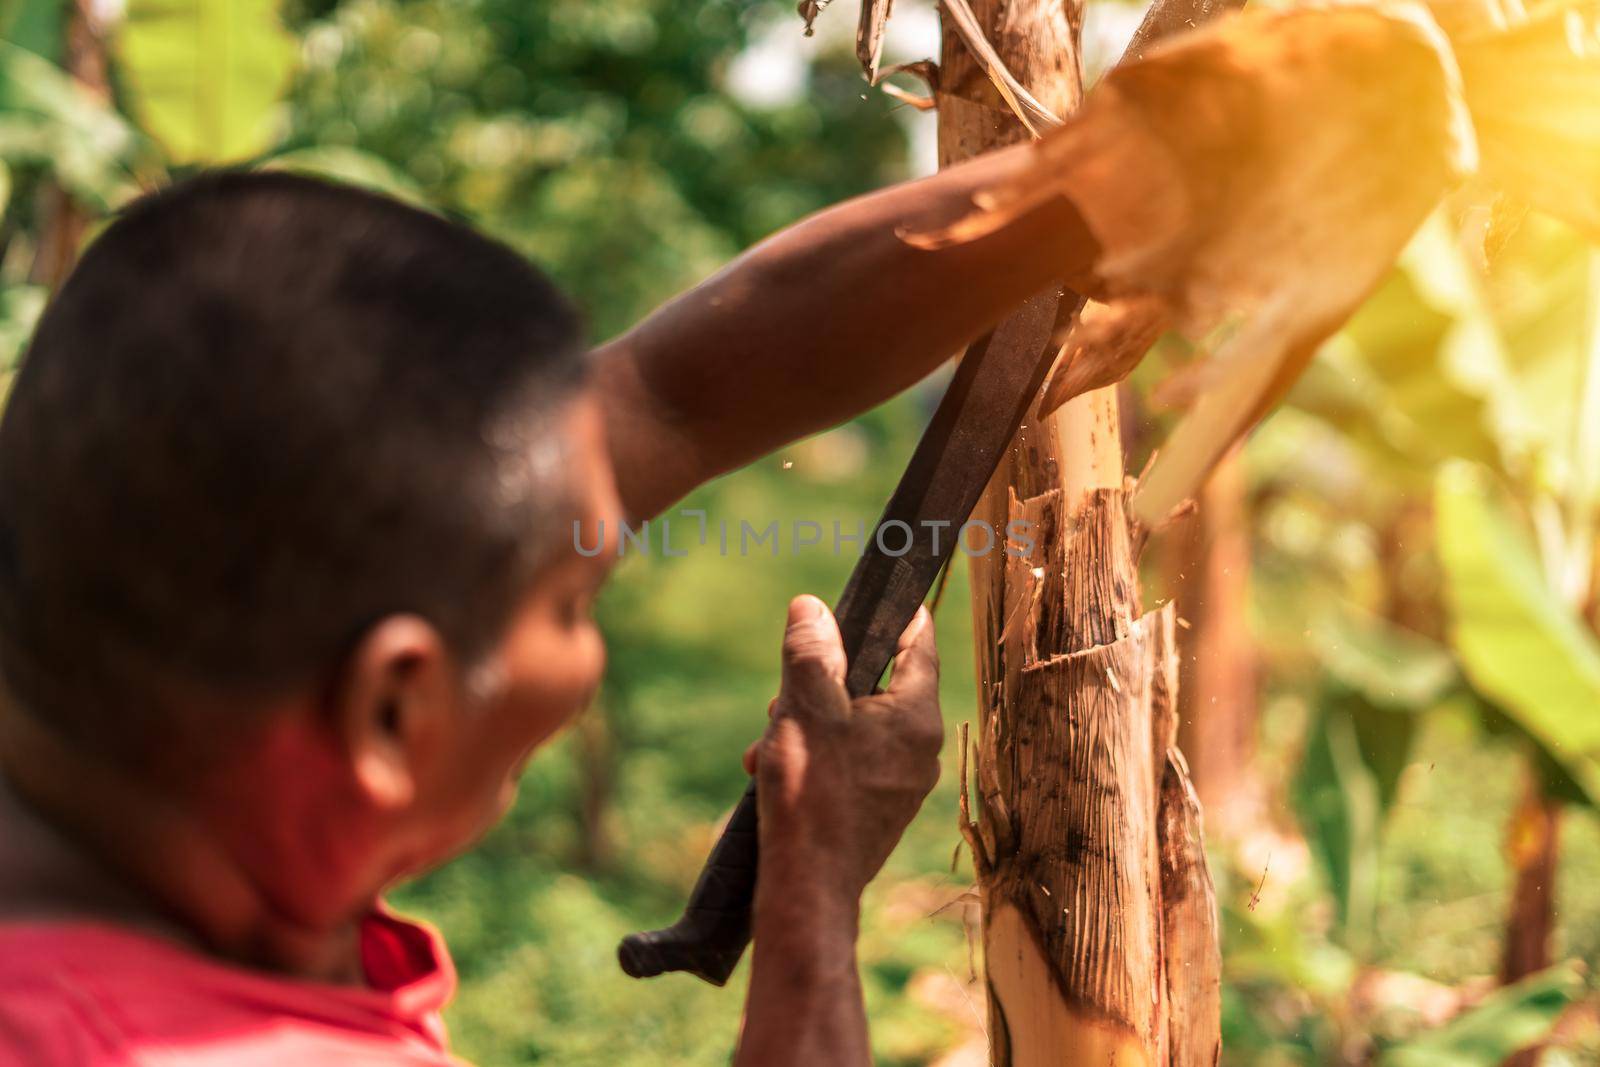 Latin farmer cutting a banana stump with a machete on a farm in Masaya Nicaragua